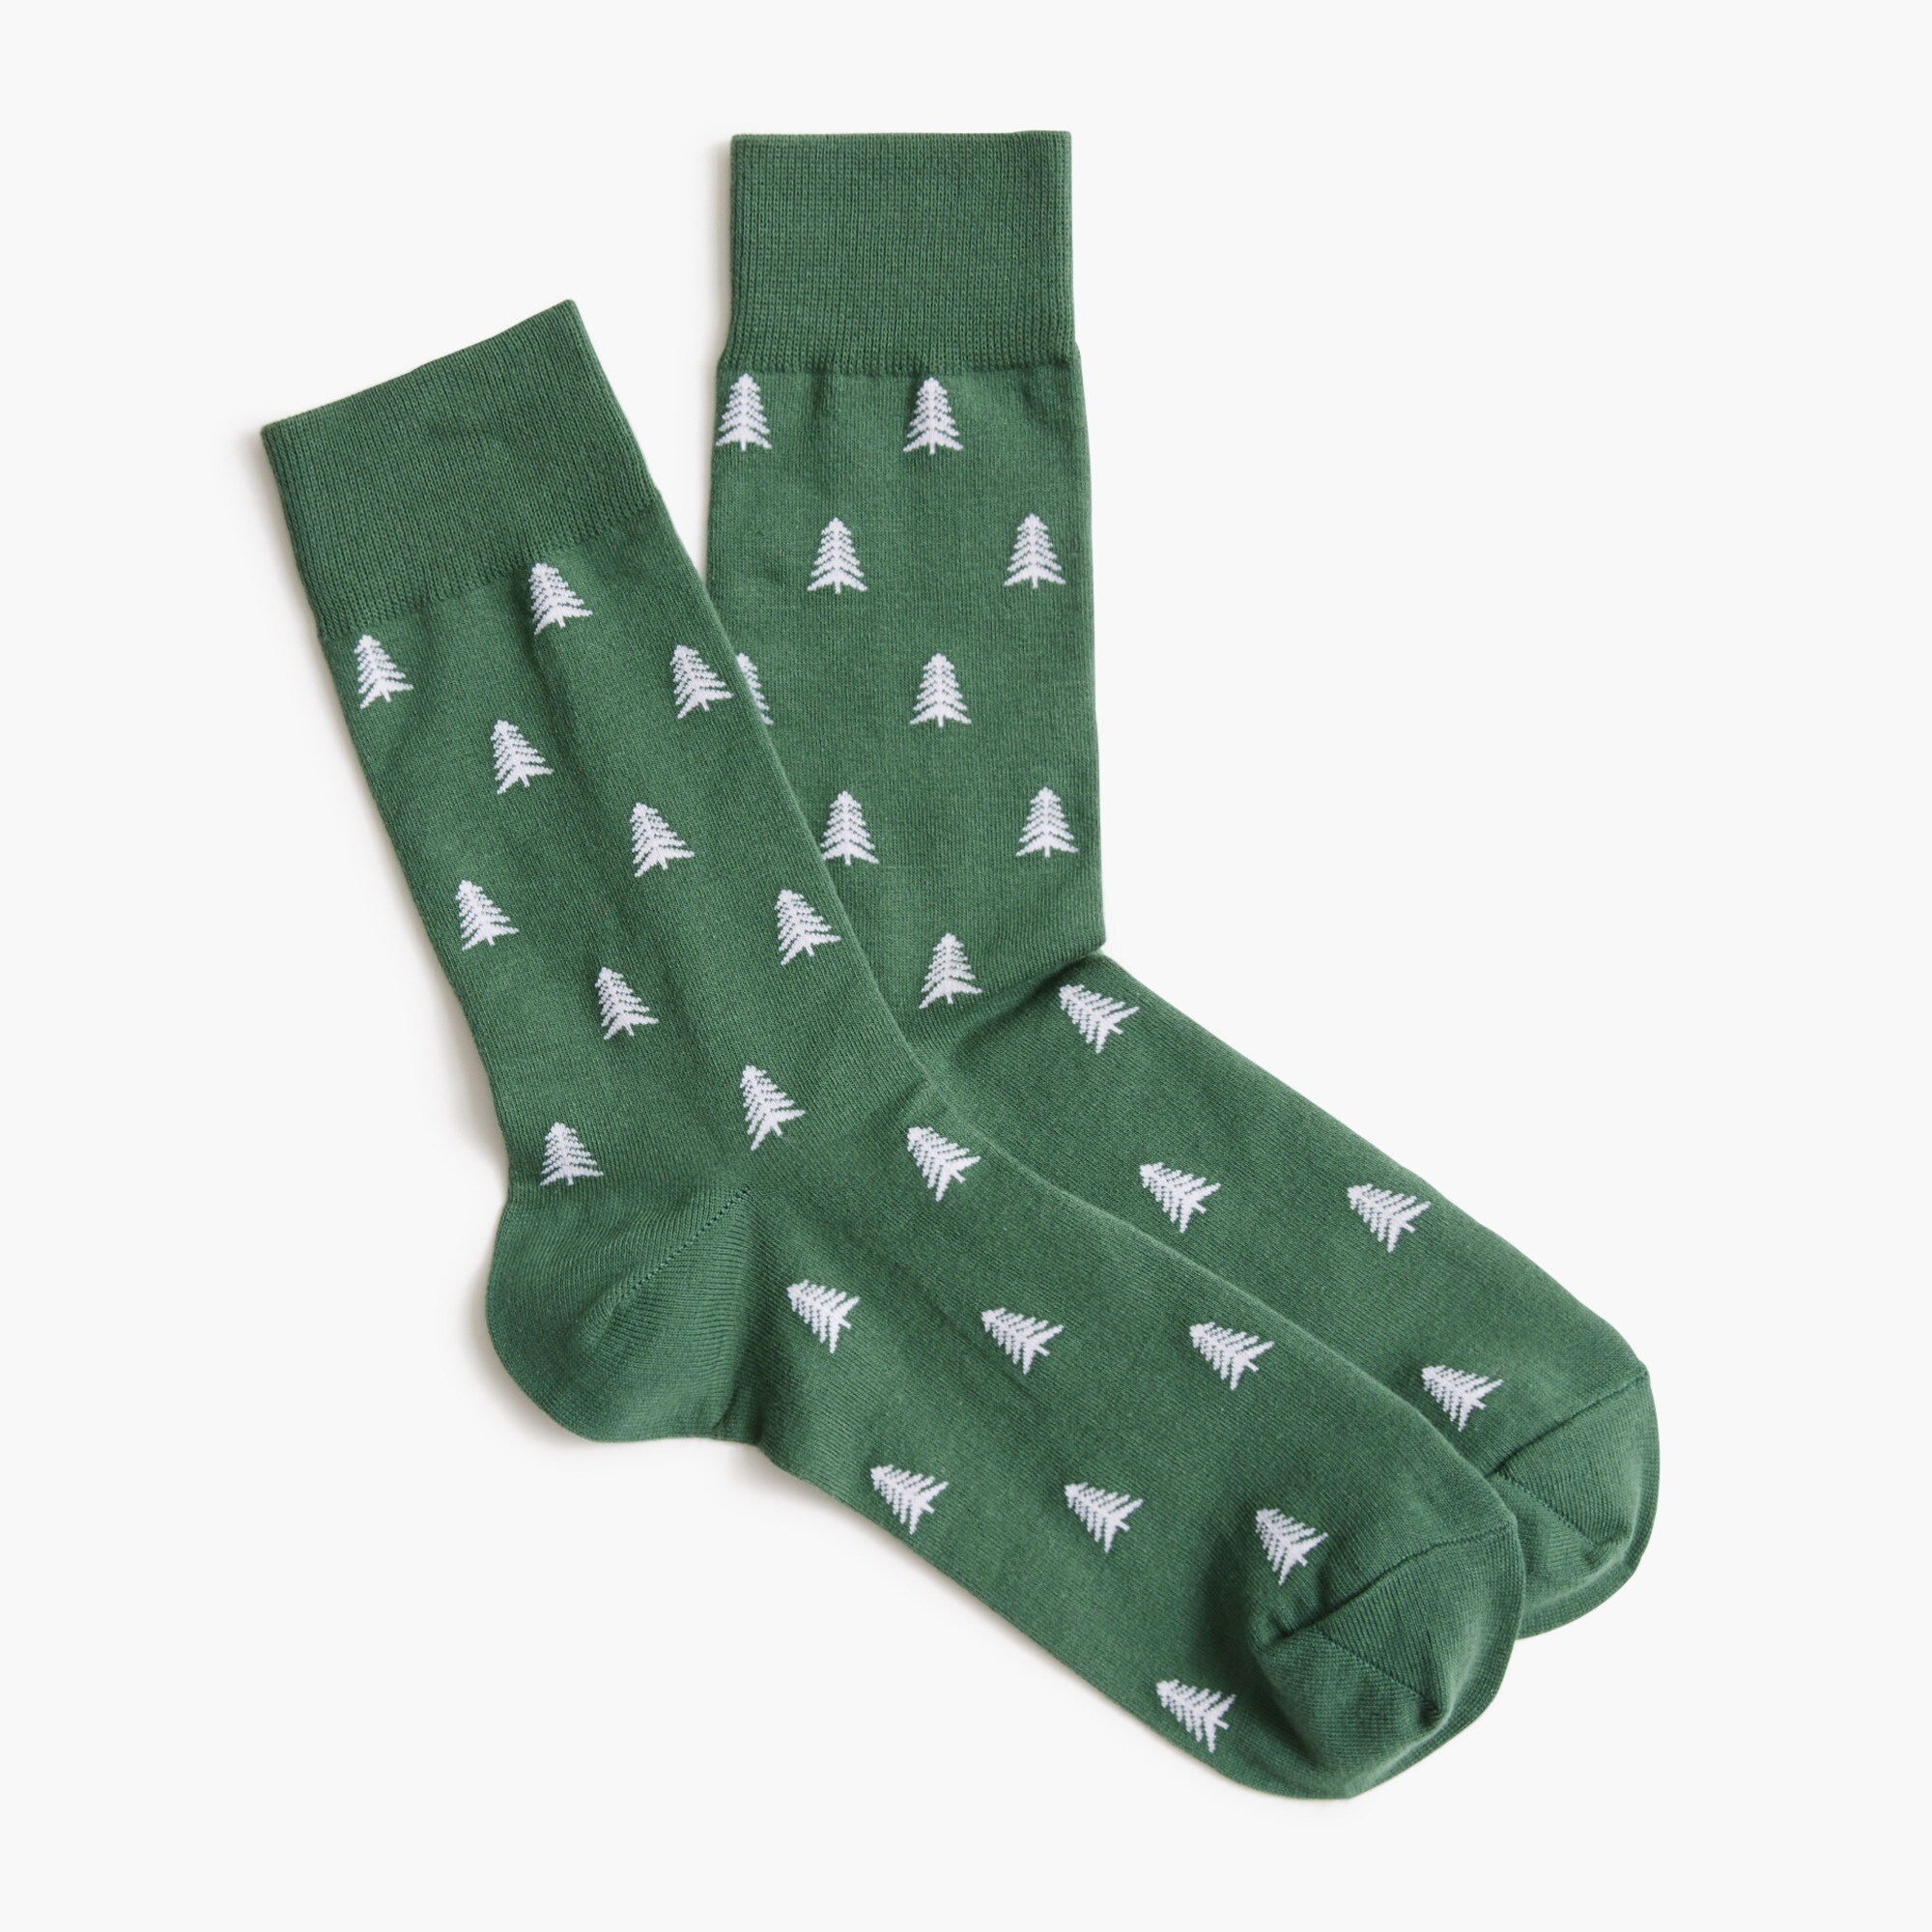  Tree socks